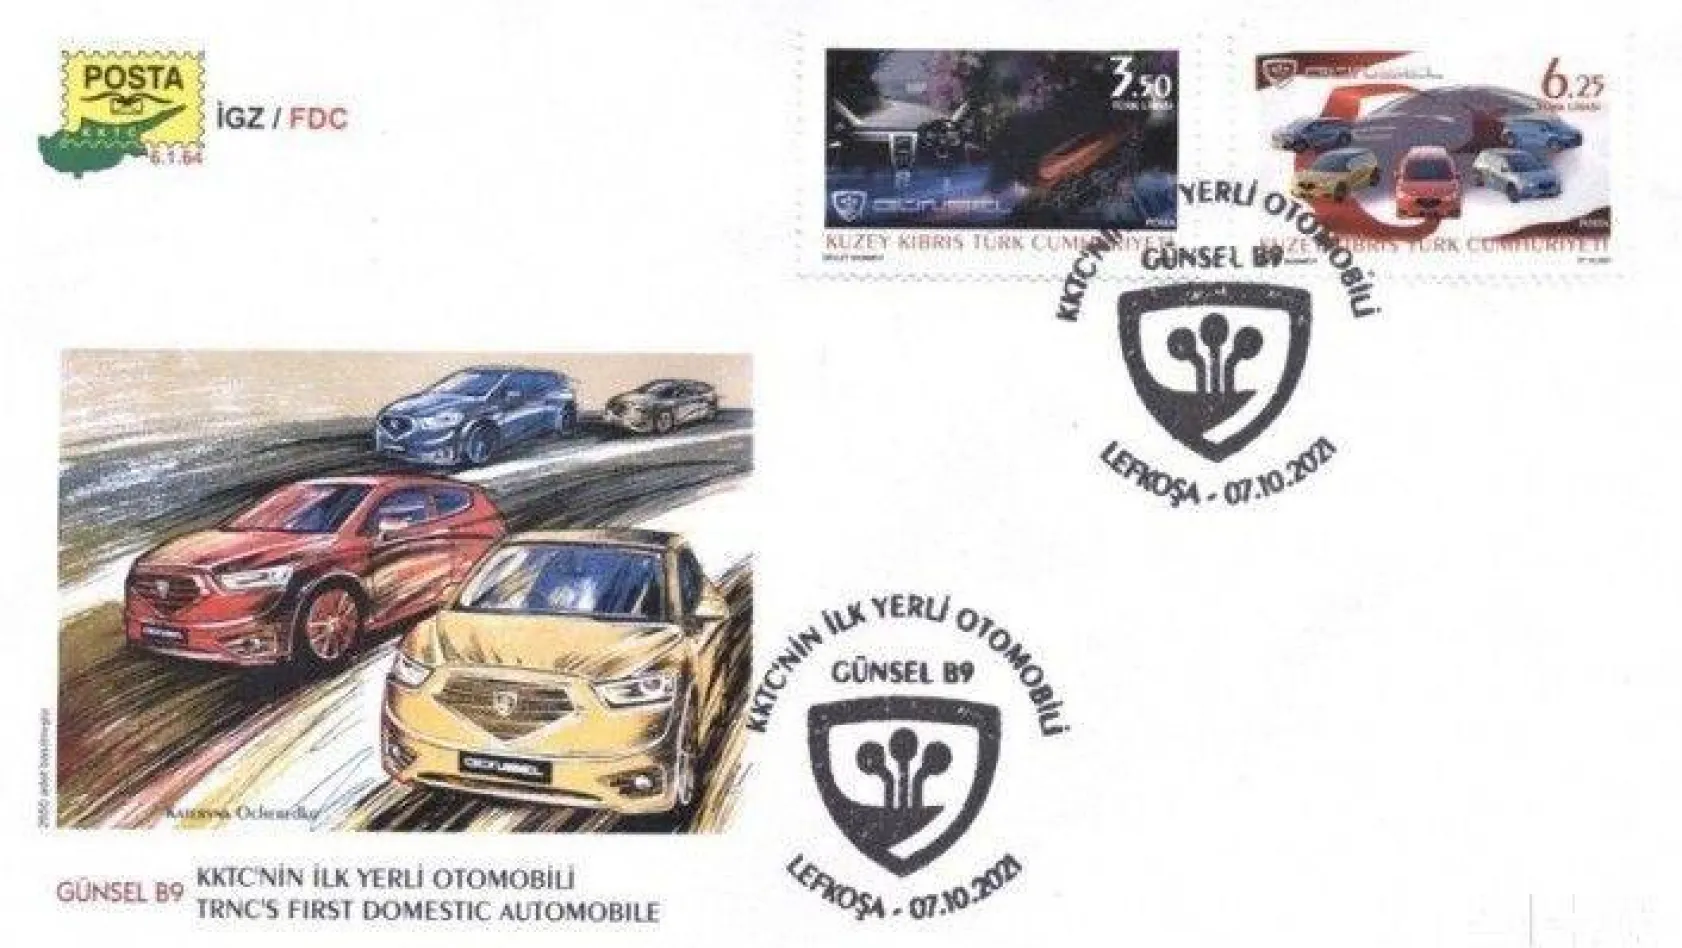 GÜNSEL'e özel tasarlanan posta pulları yerli otomobilden önce dünyayı dolaşacak